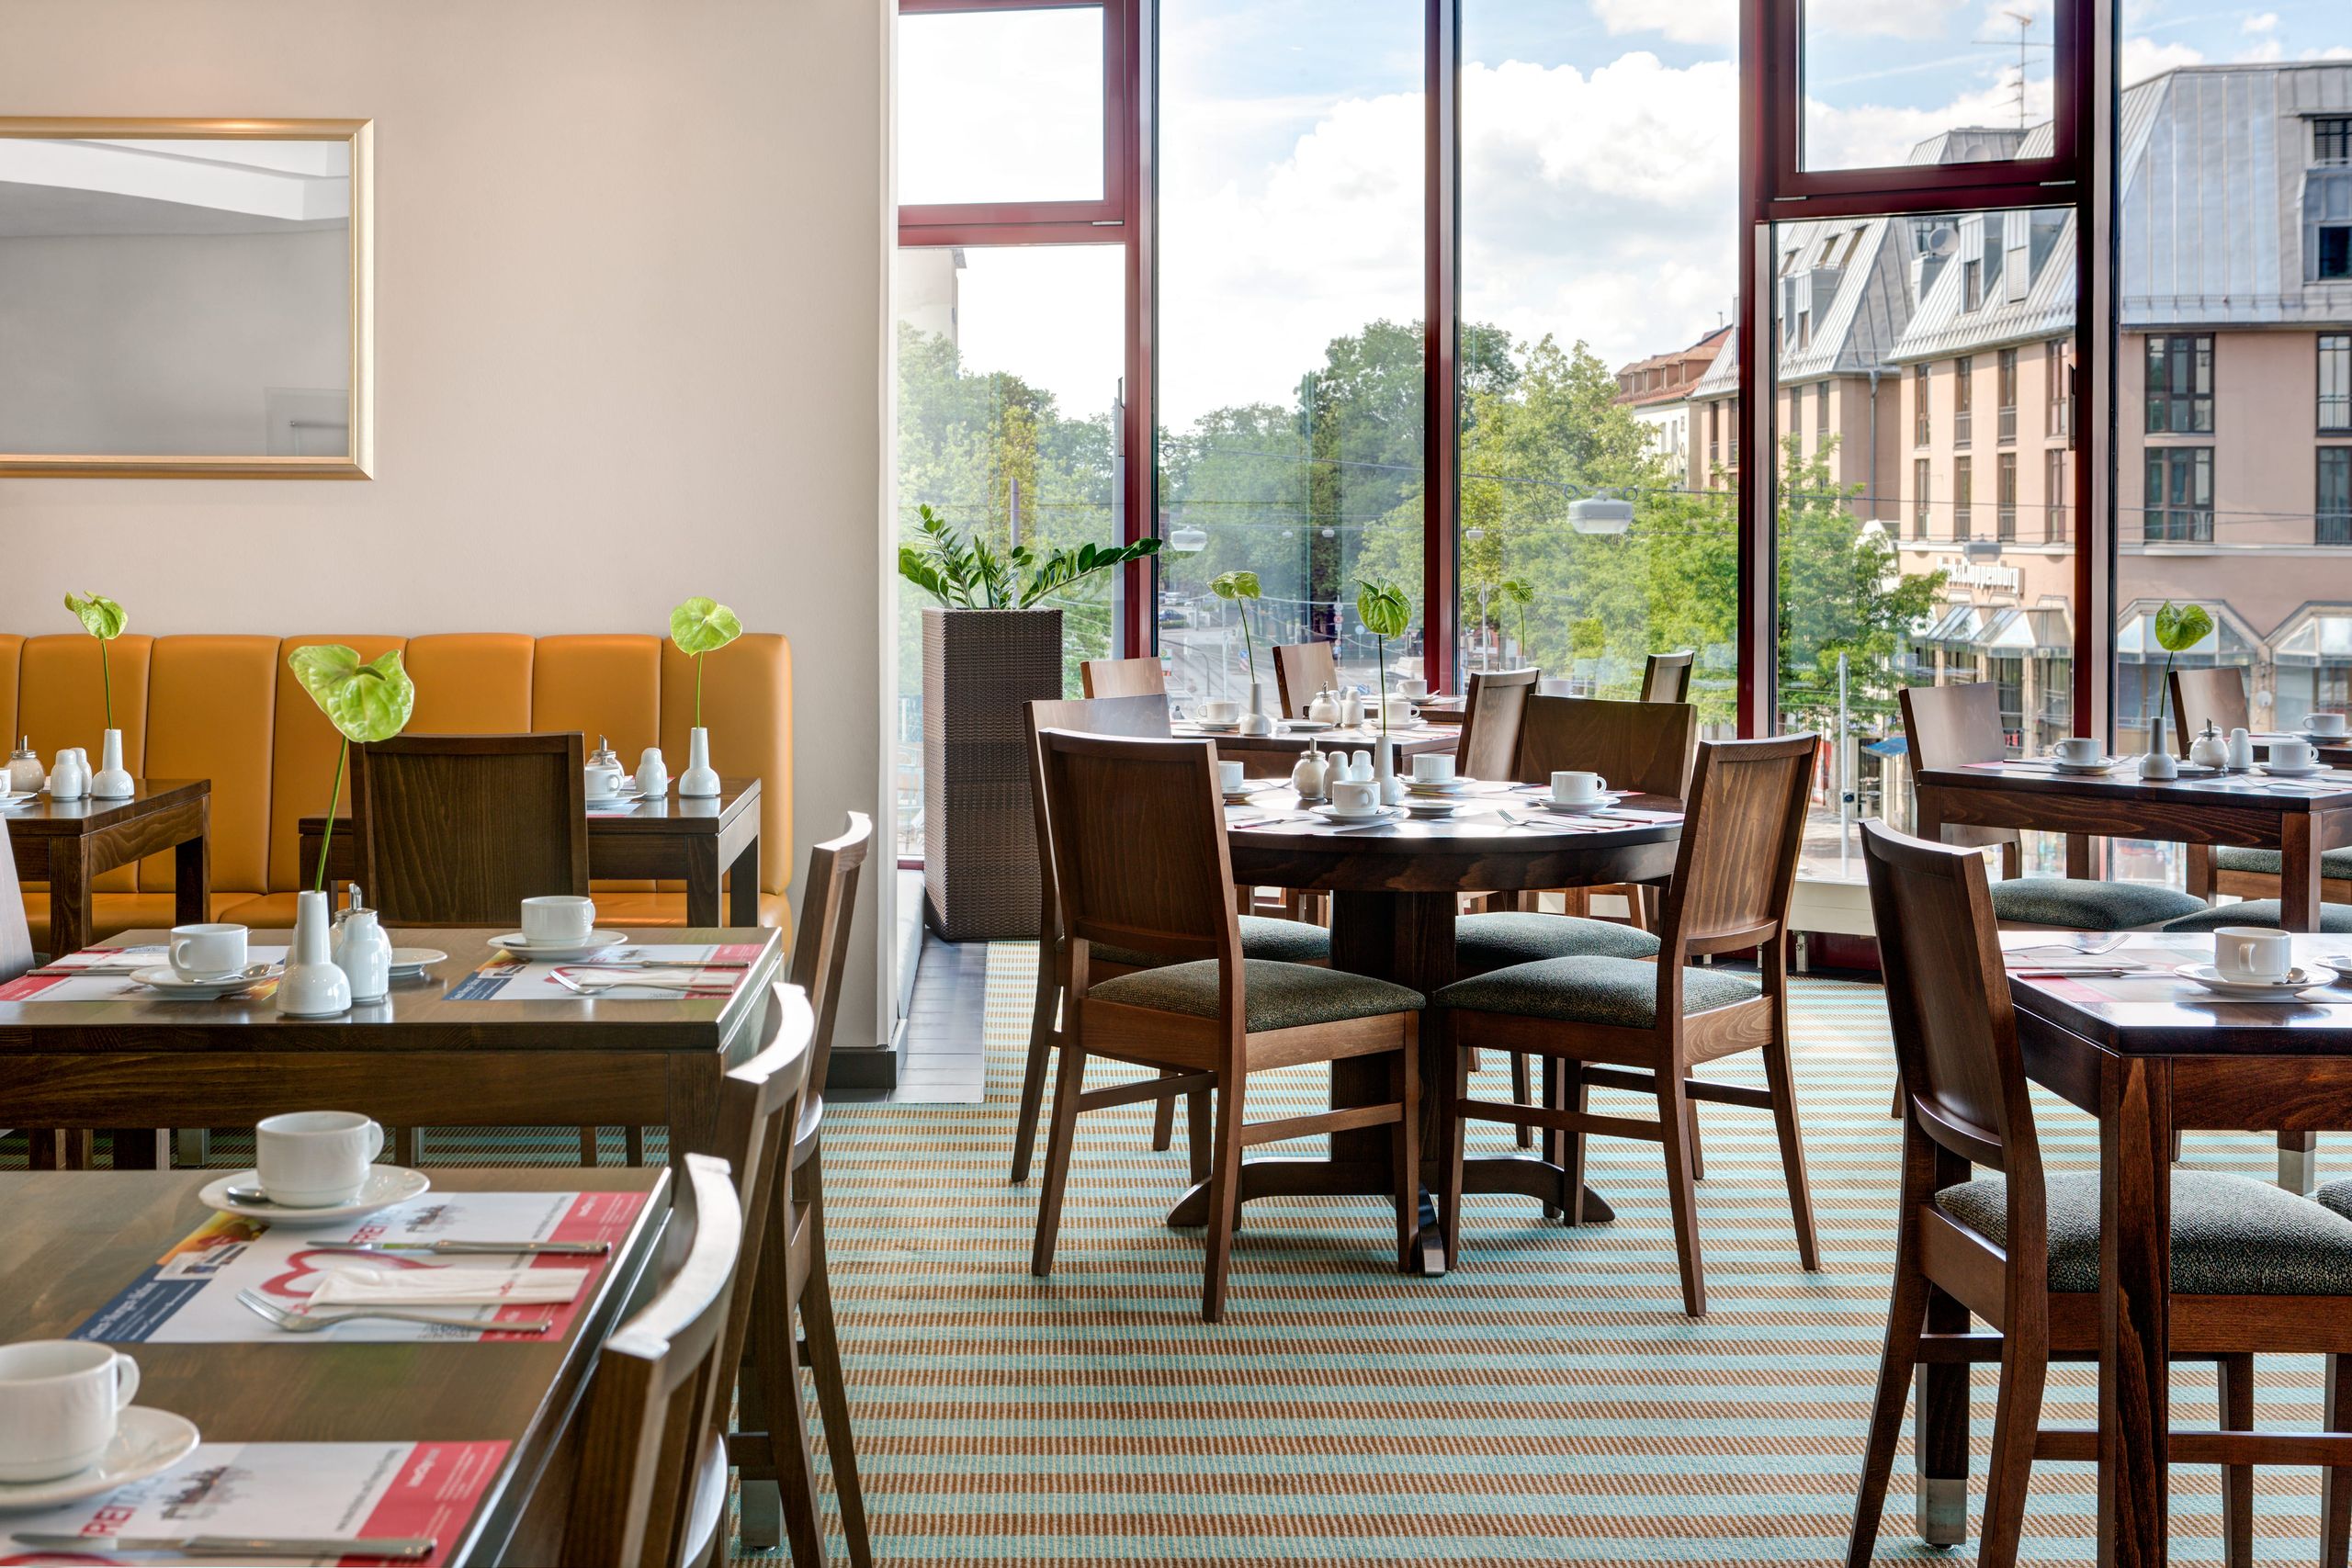 IntercityHotel Augsburg – breakfast restaurant